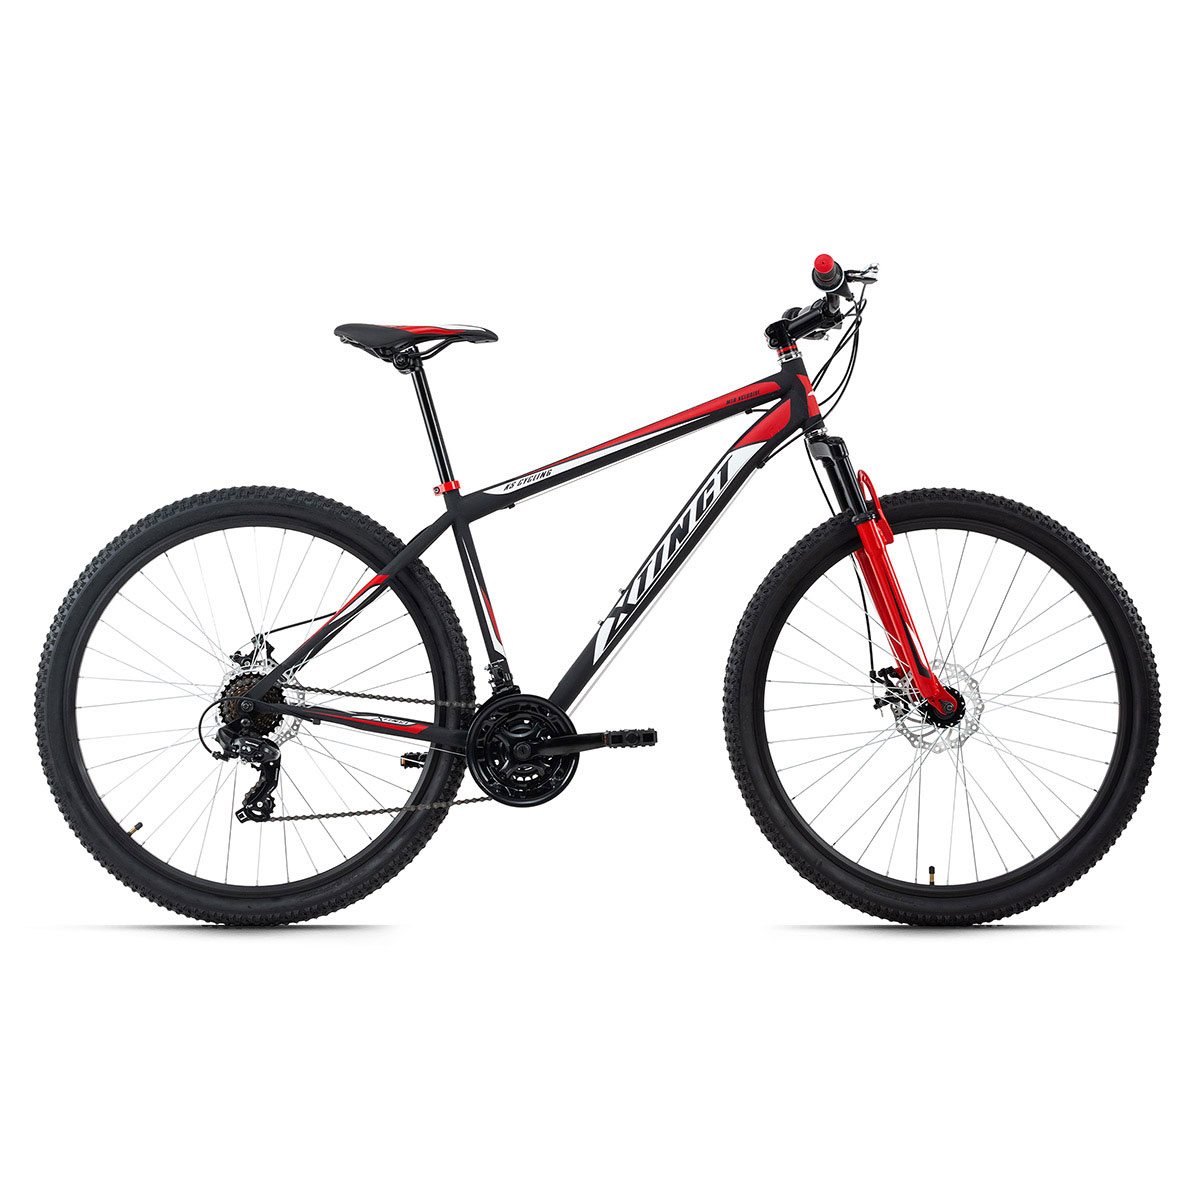 Mountainbike „Xtinct“, Hardtail, 29 Zoll, 46 cm, schwarz-rot